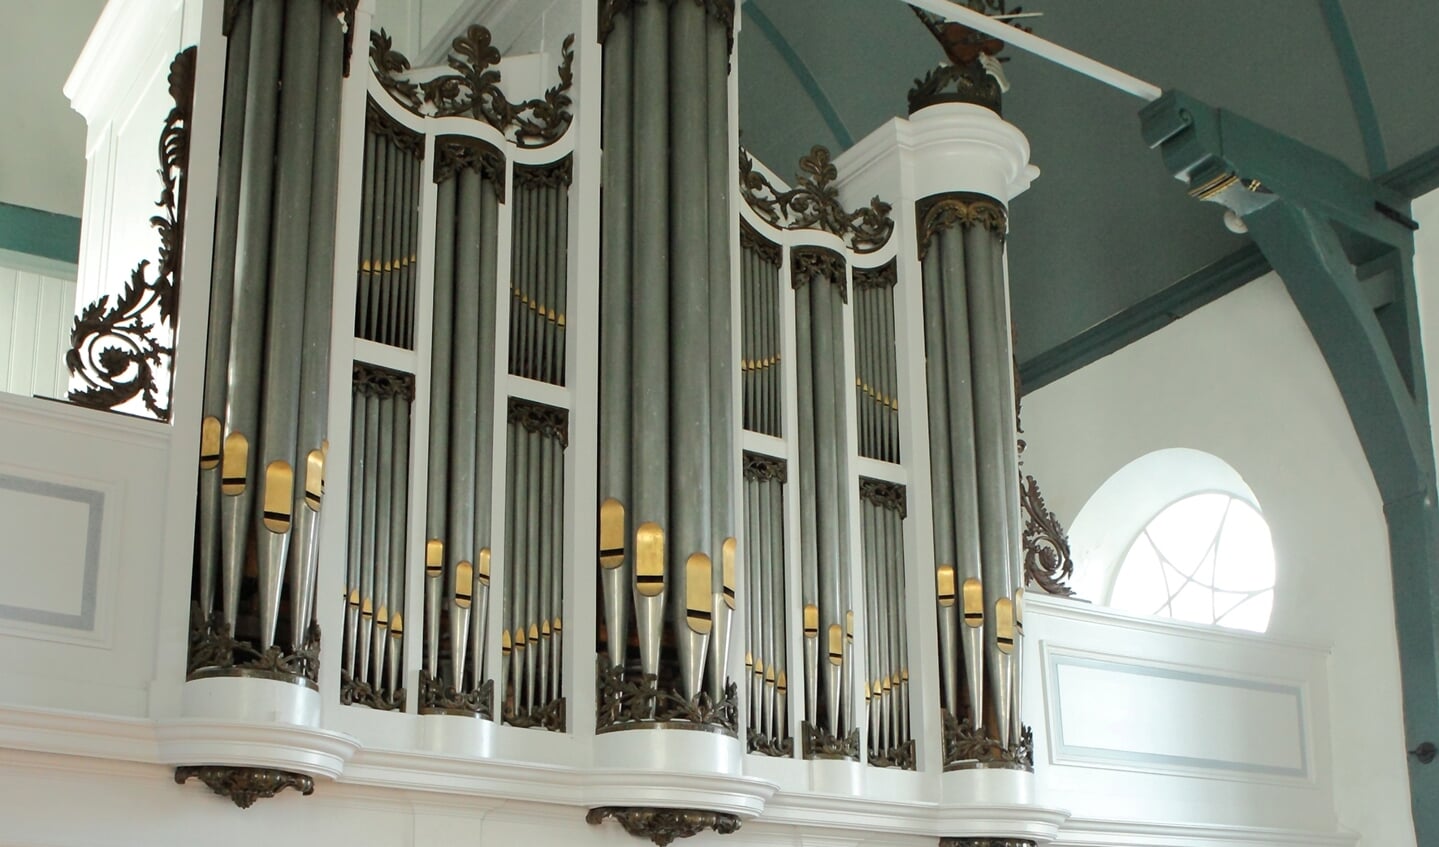 Het orgelfront van de Dorpskerk Huizum